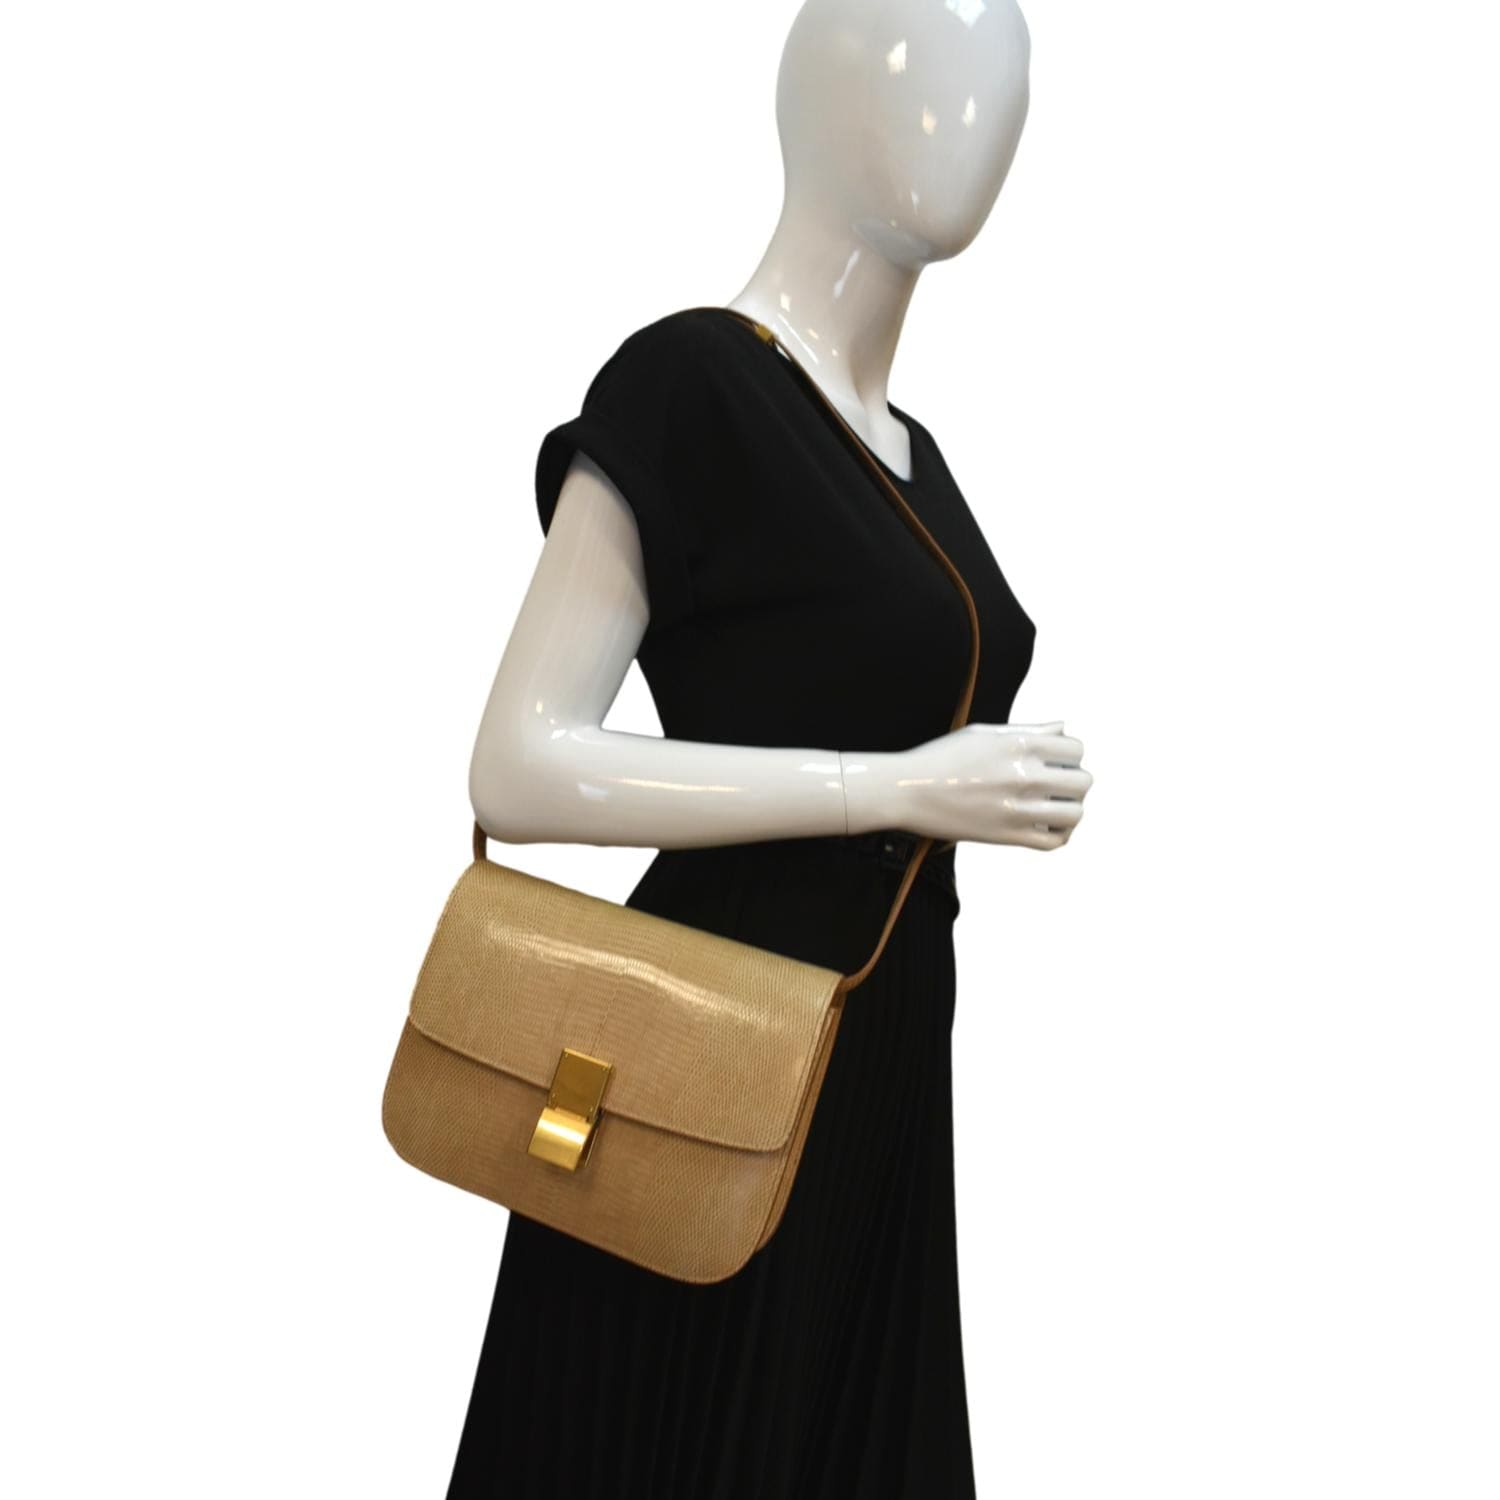 Celine Classic Box Shoulder Bag